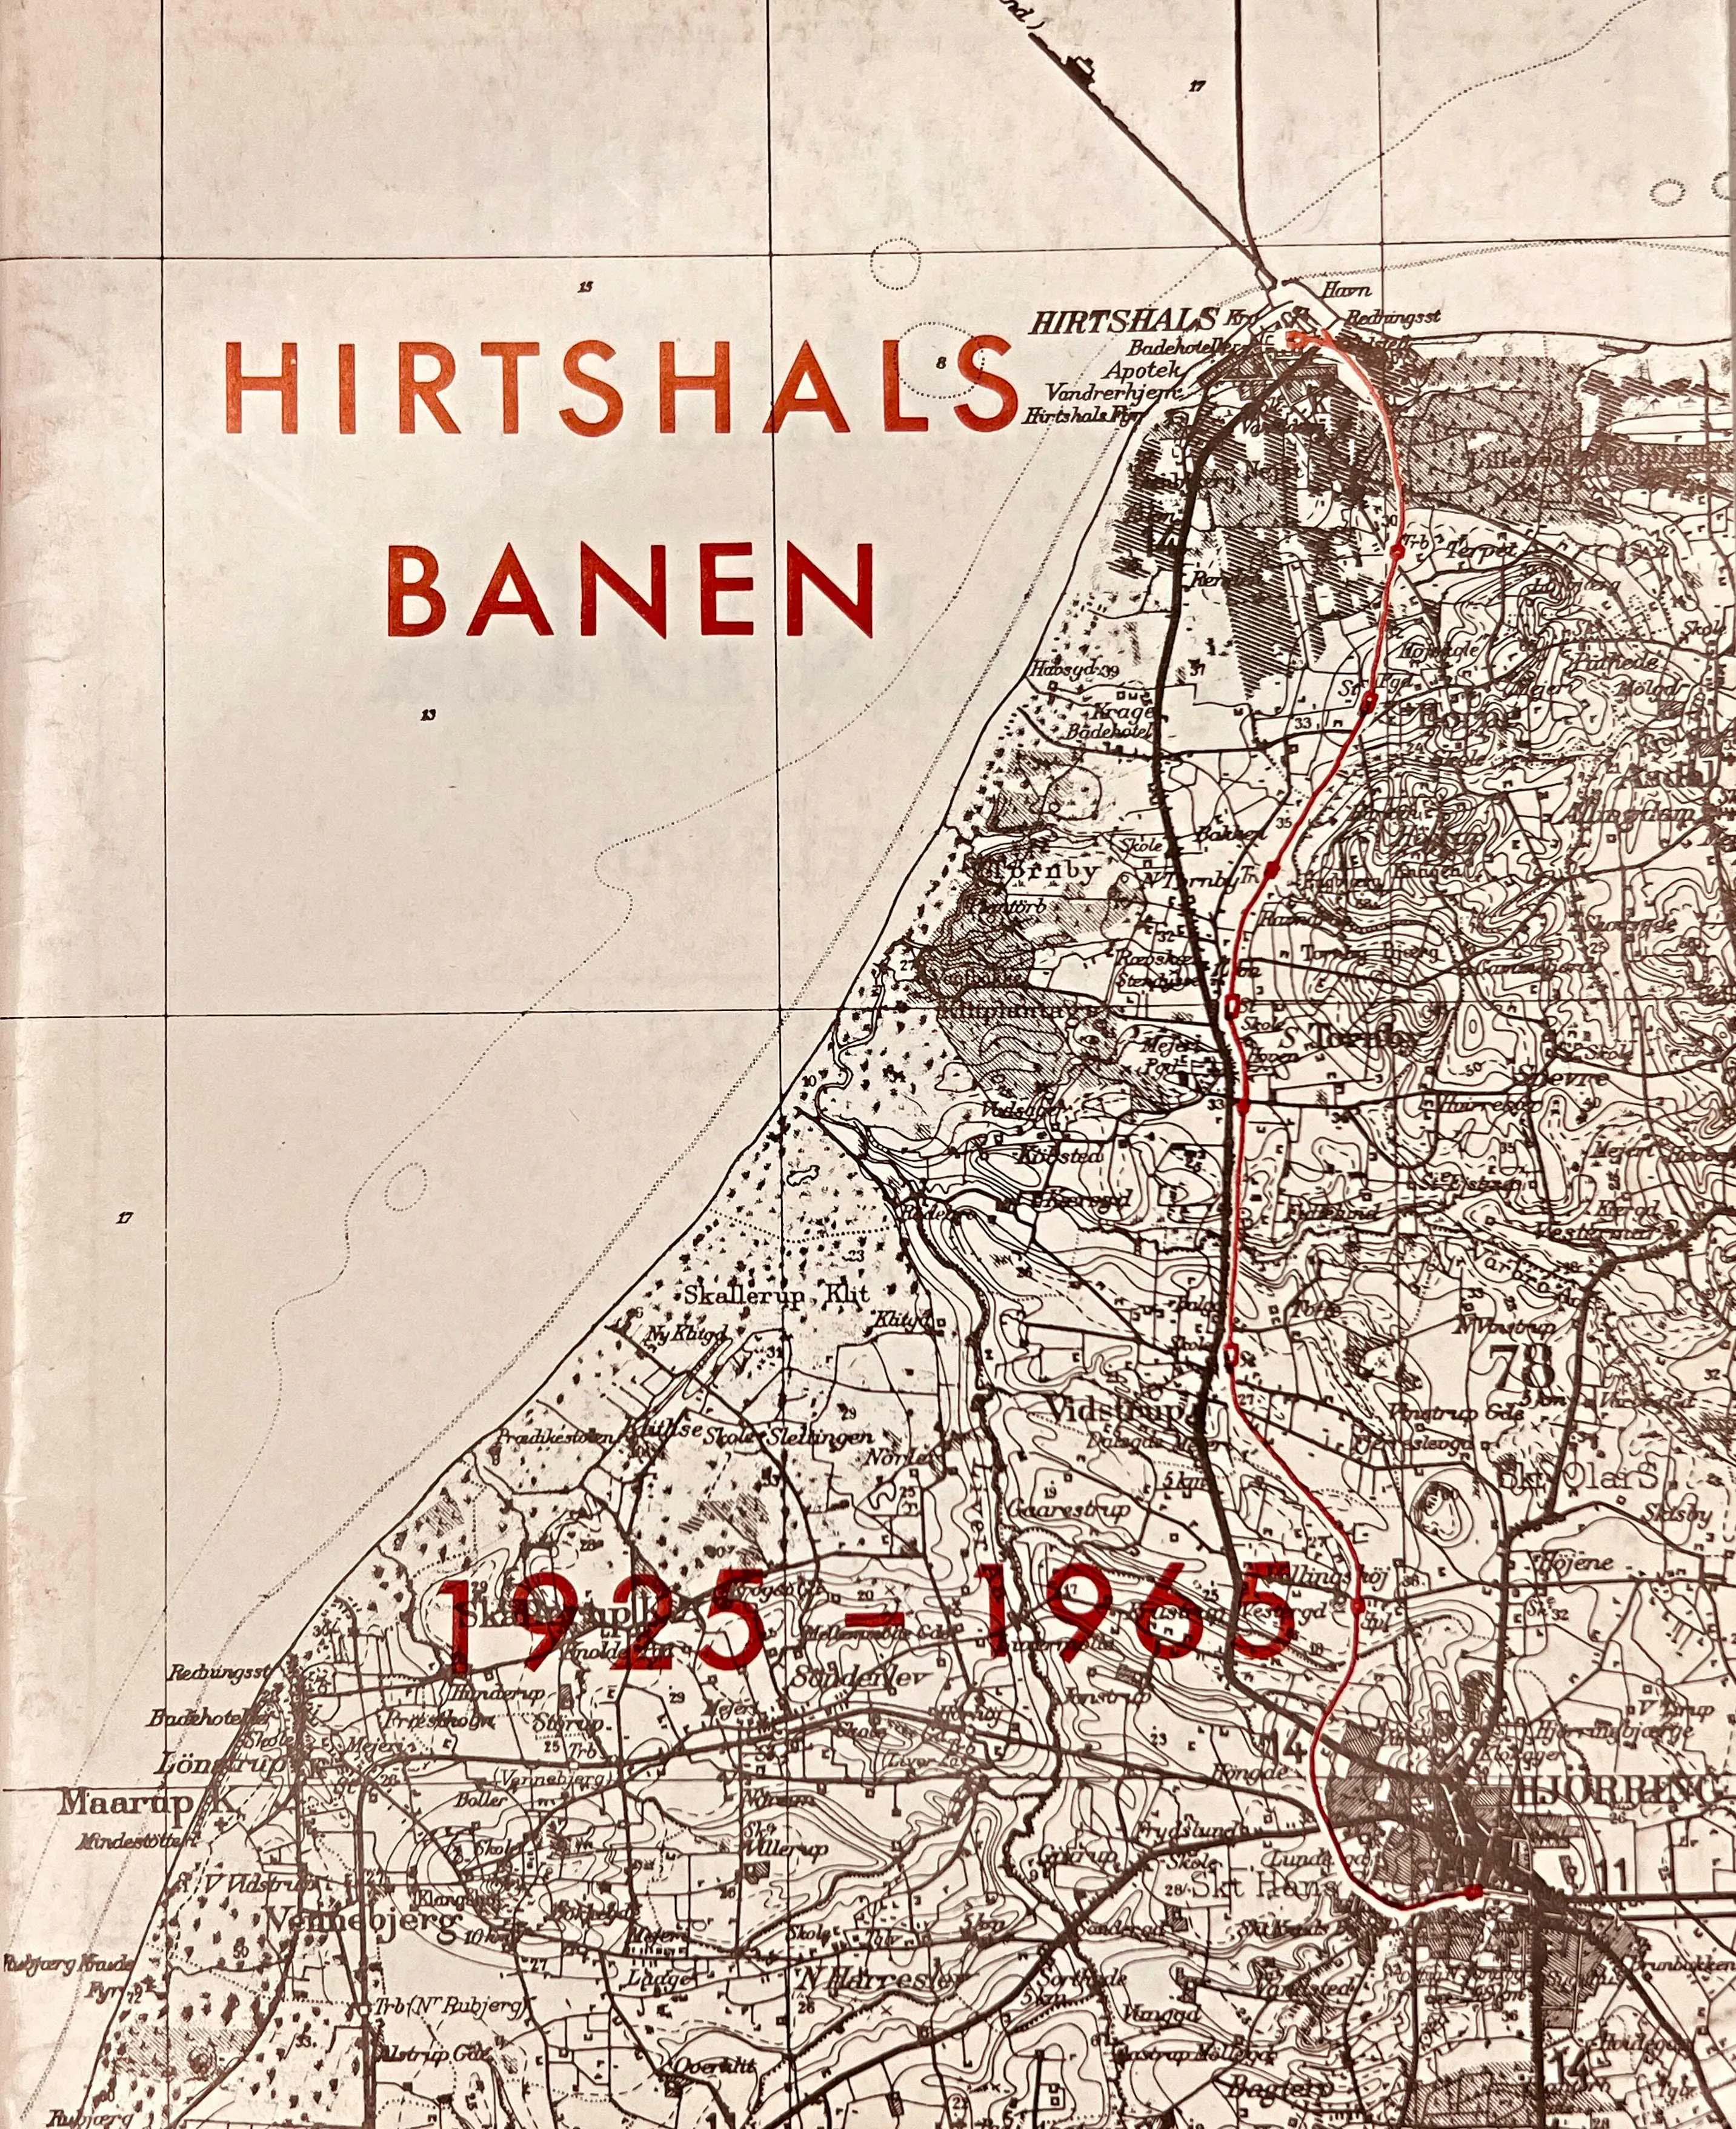 Hirtshalsbanen 1925-1965